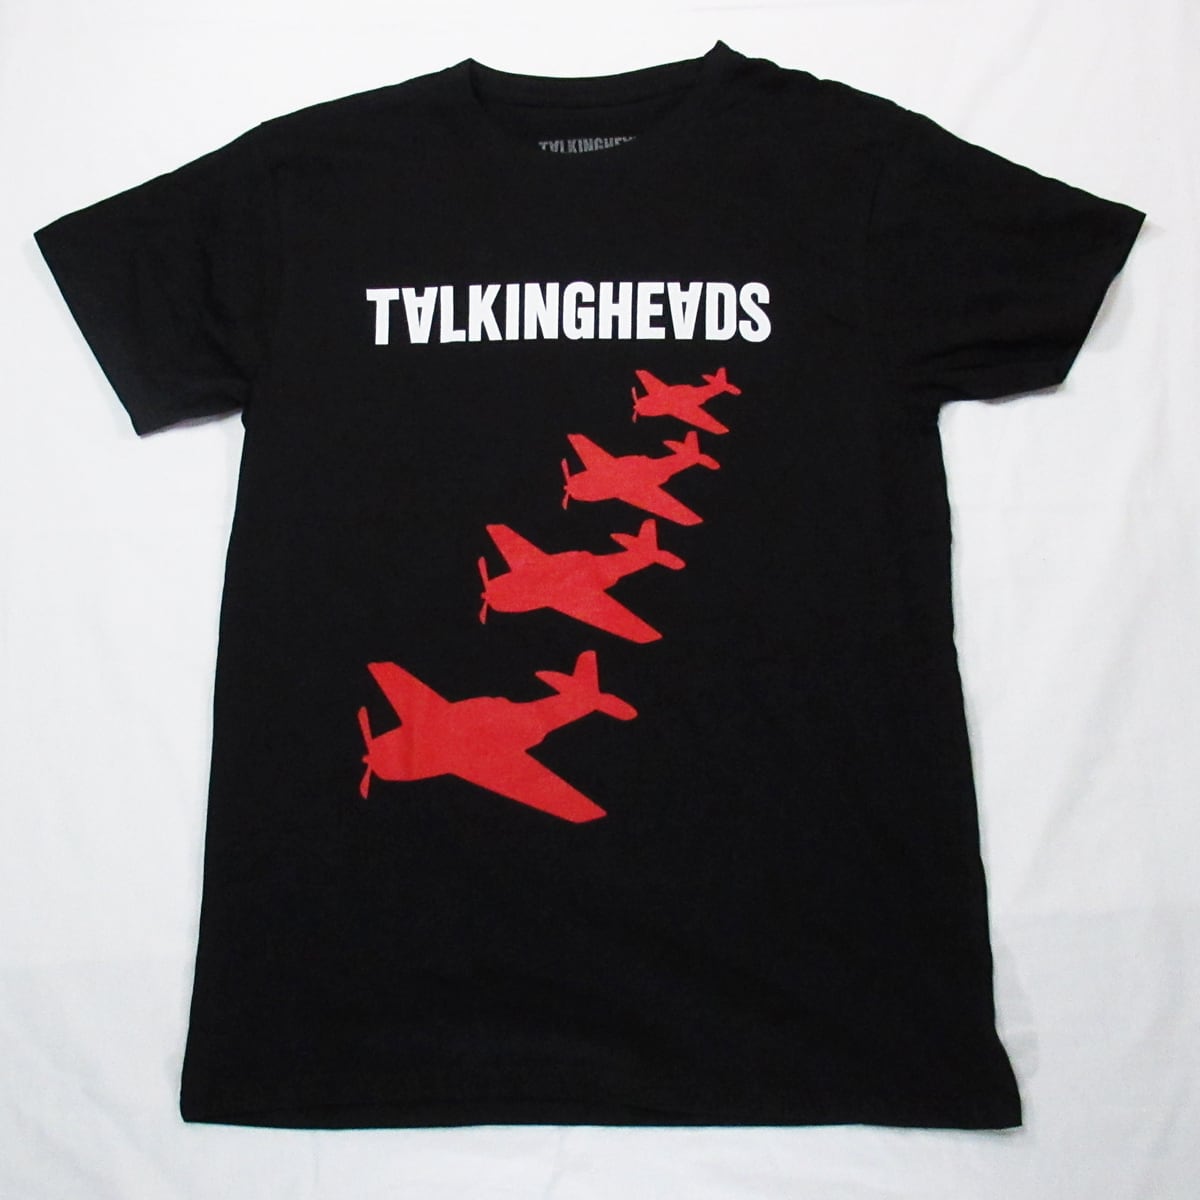 Talking Heads  Tシャツ